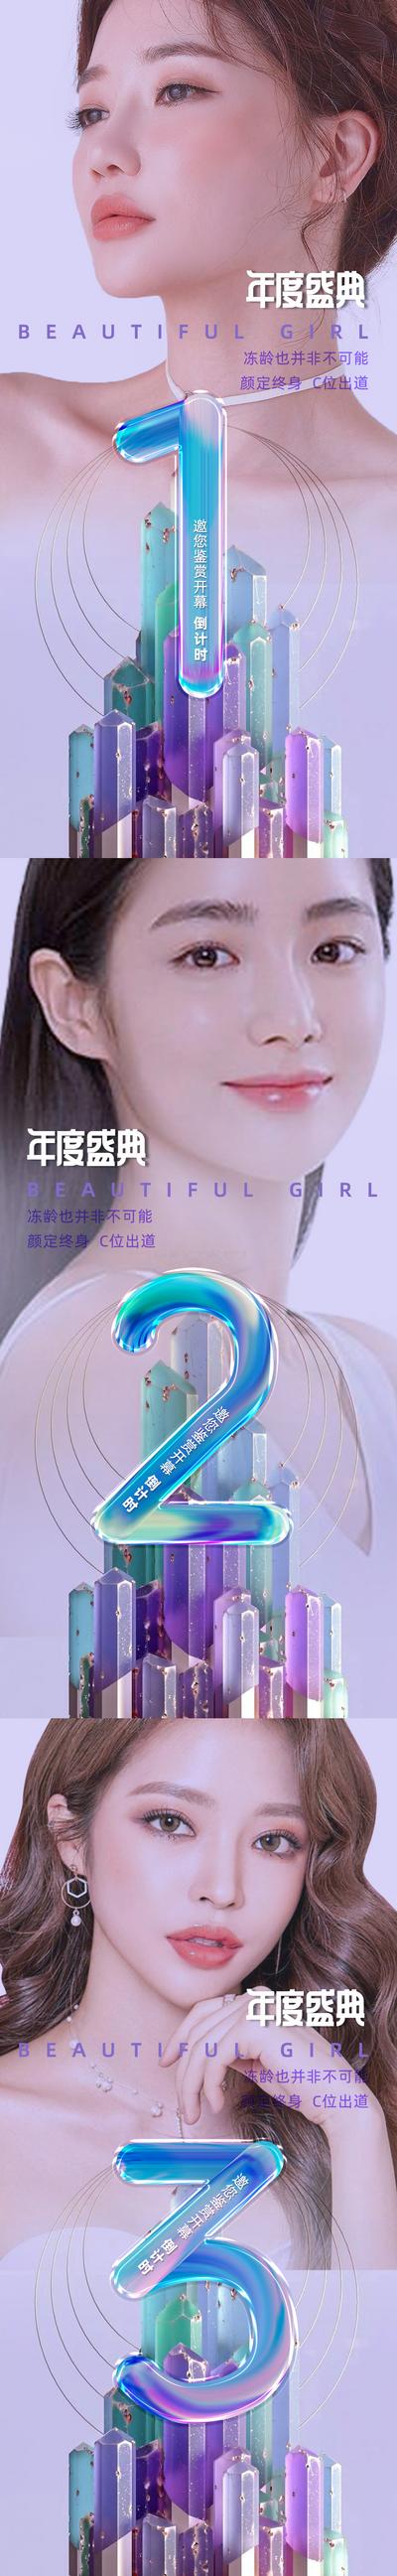 南门网 广告 海报 医美 倒计时 人物 盛典 活动 系列 美女